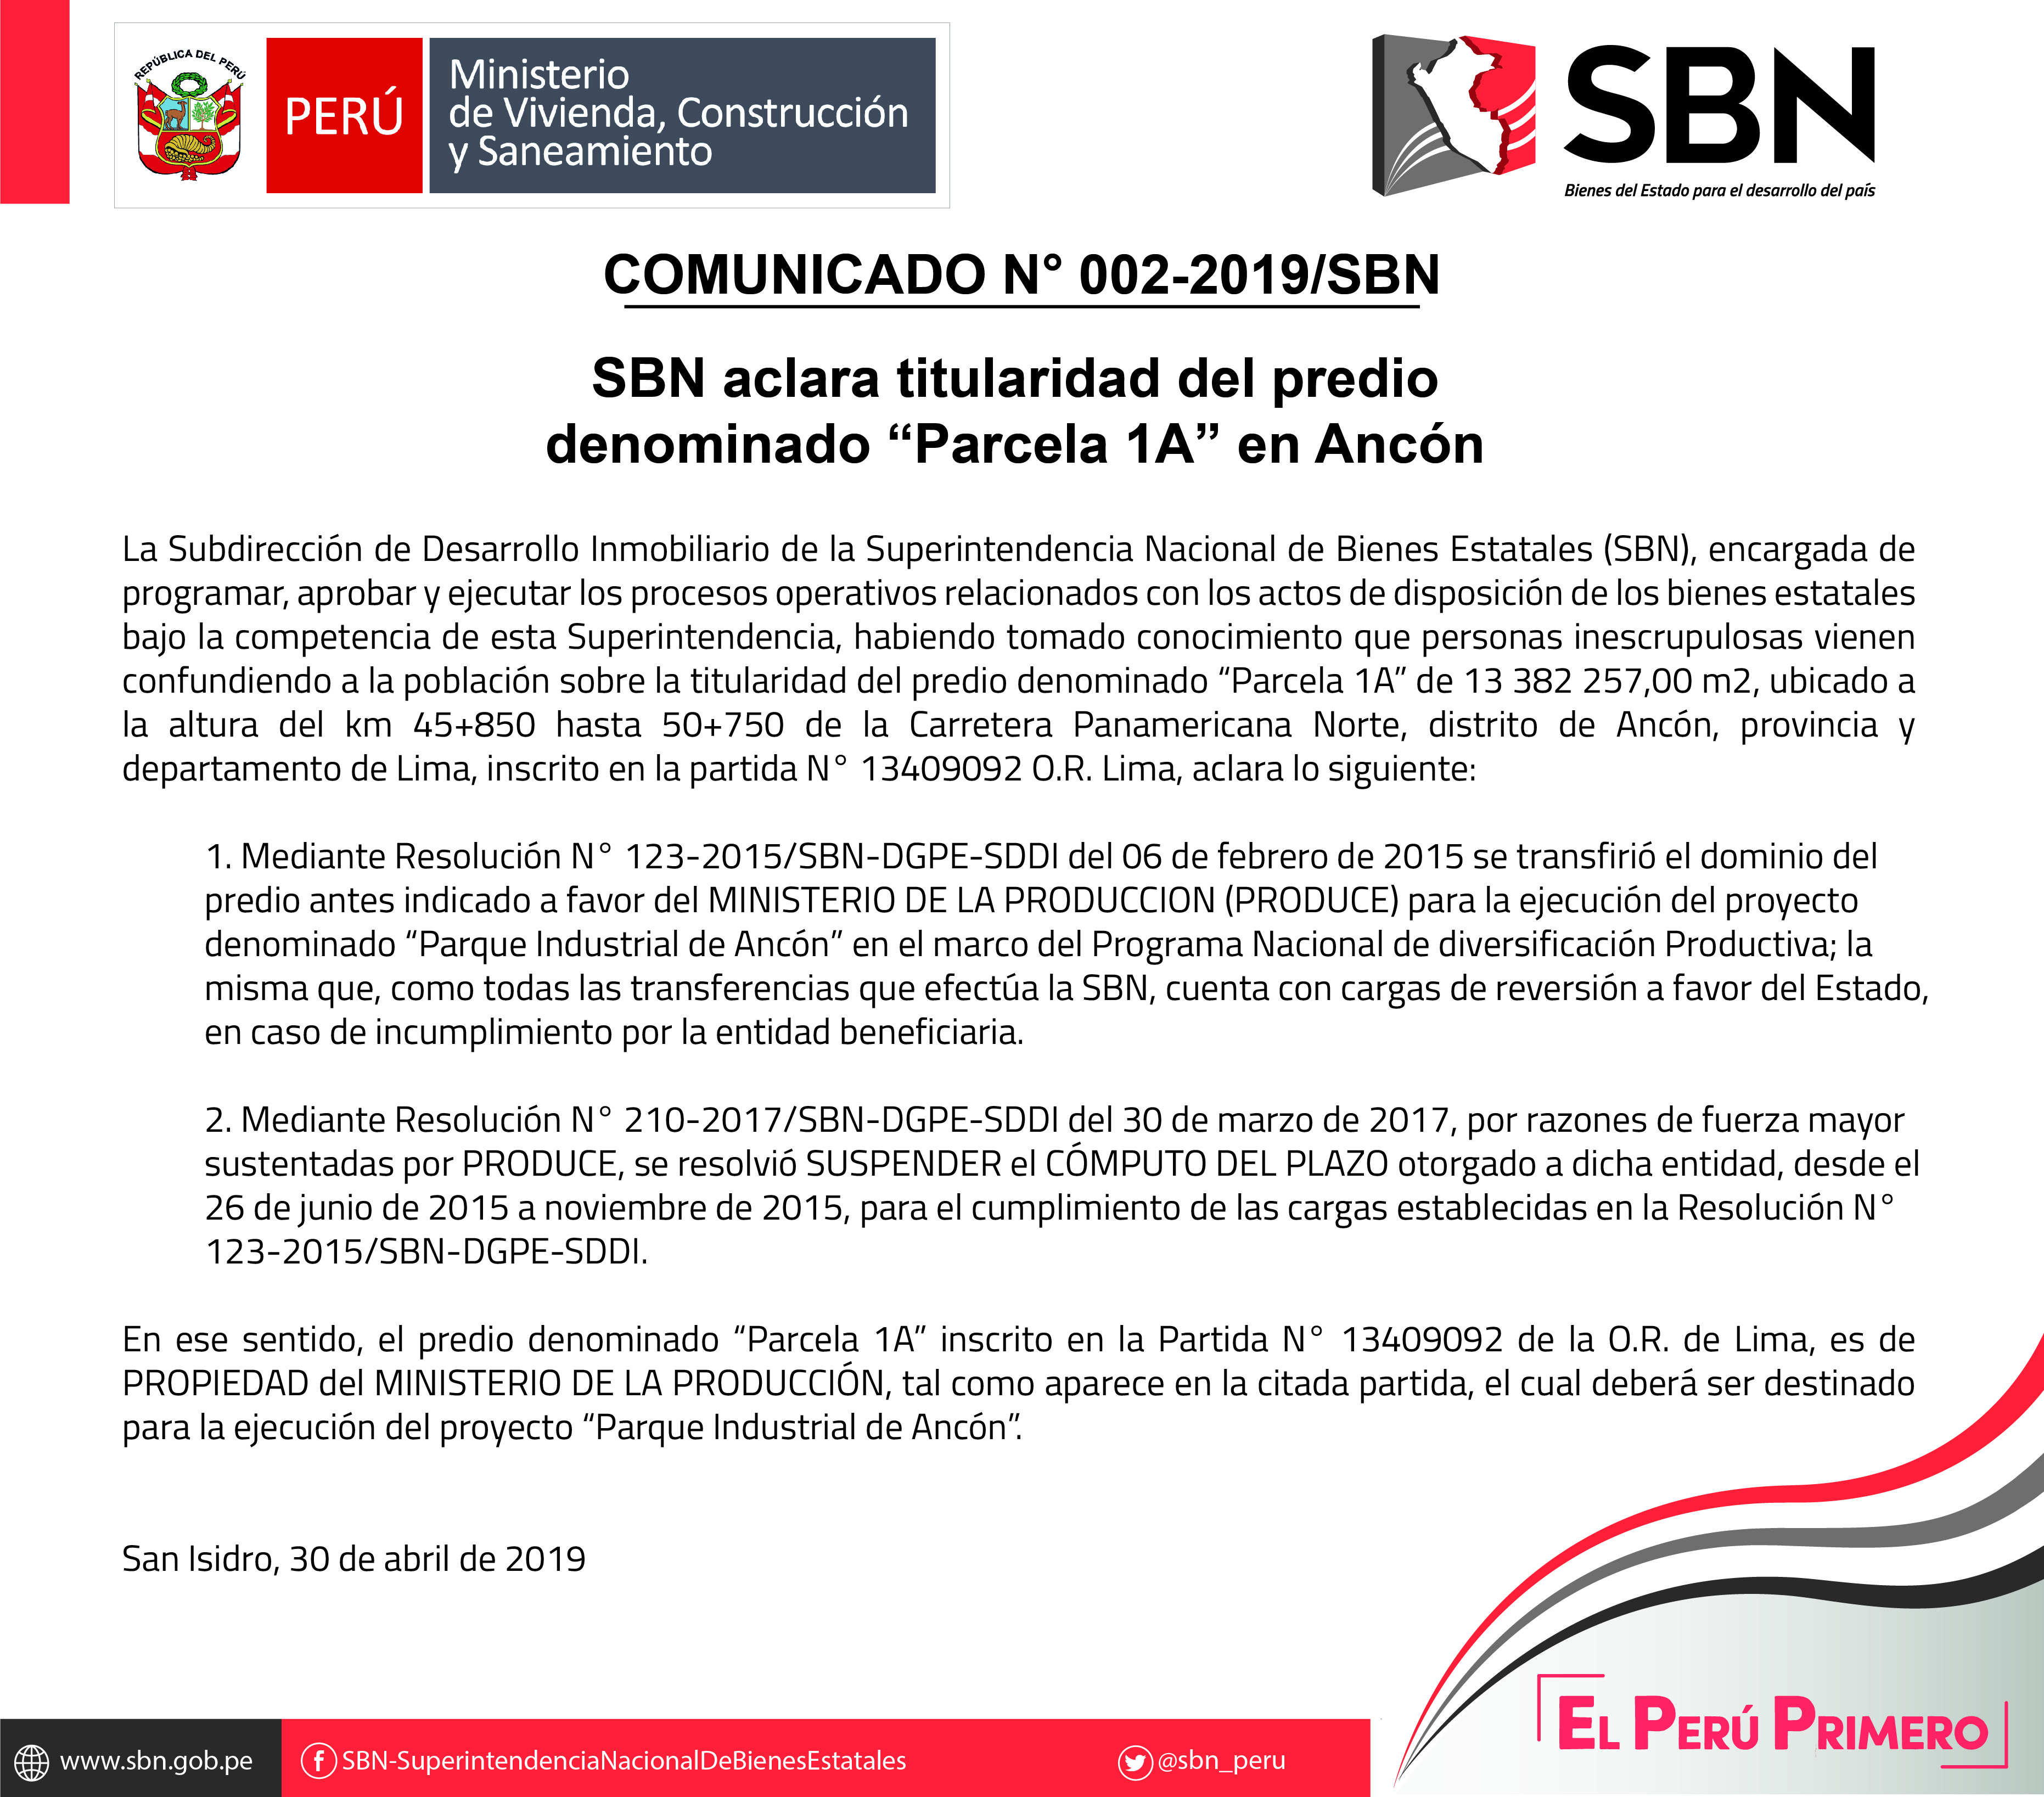  COMUNICADO OFICIAL N° 002-2019-SBN